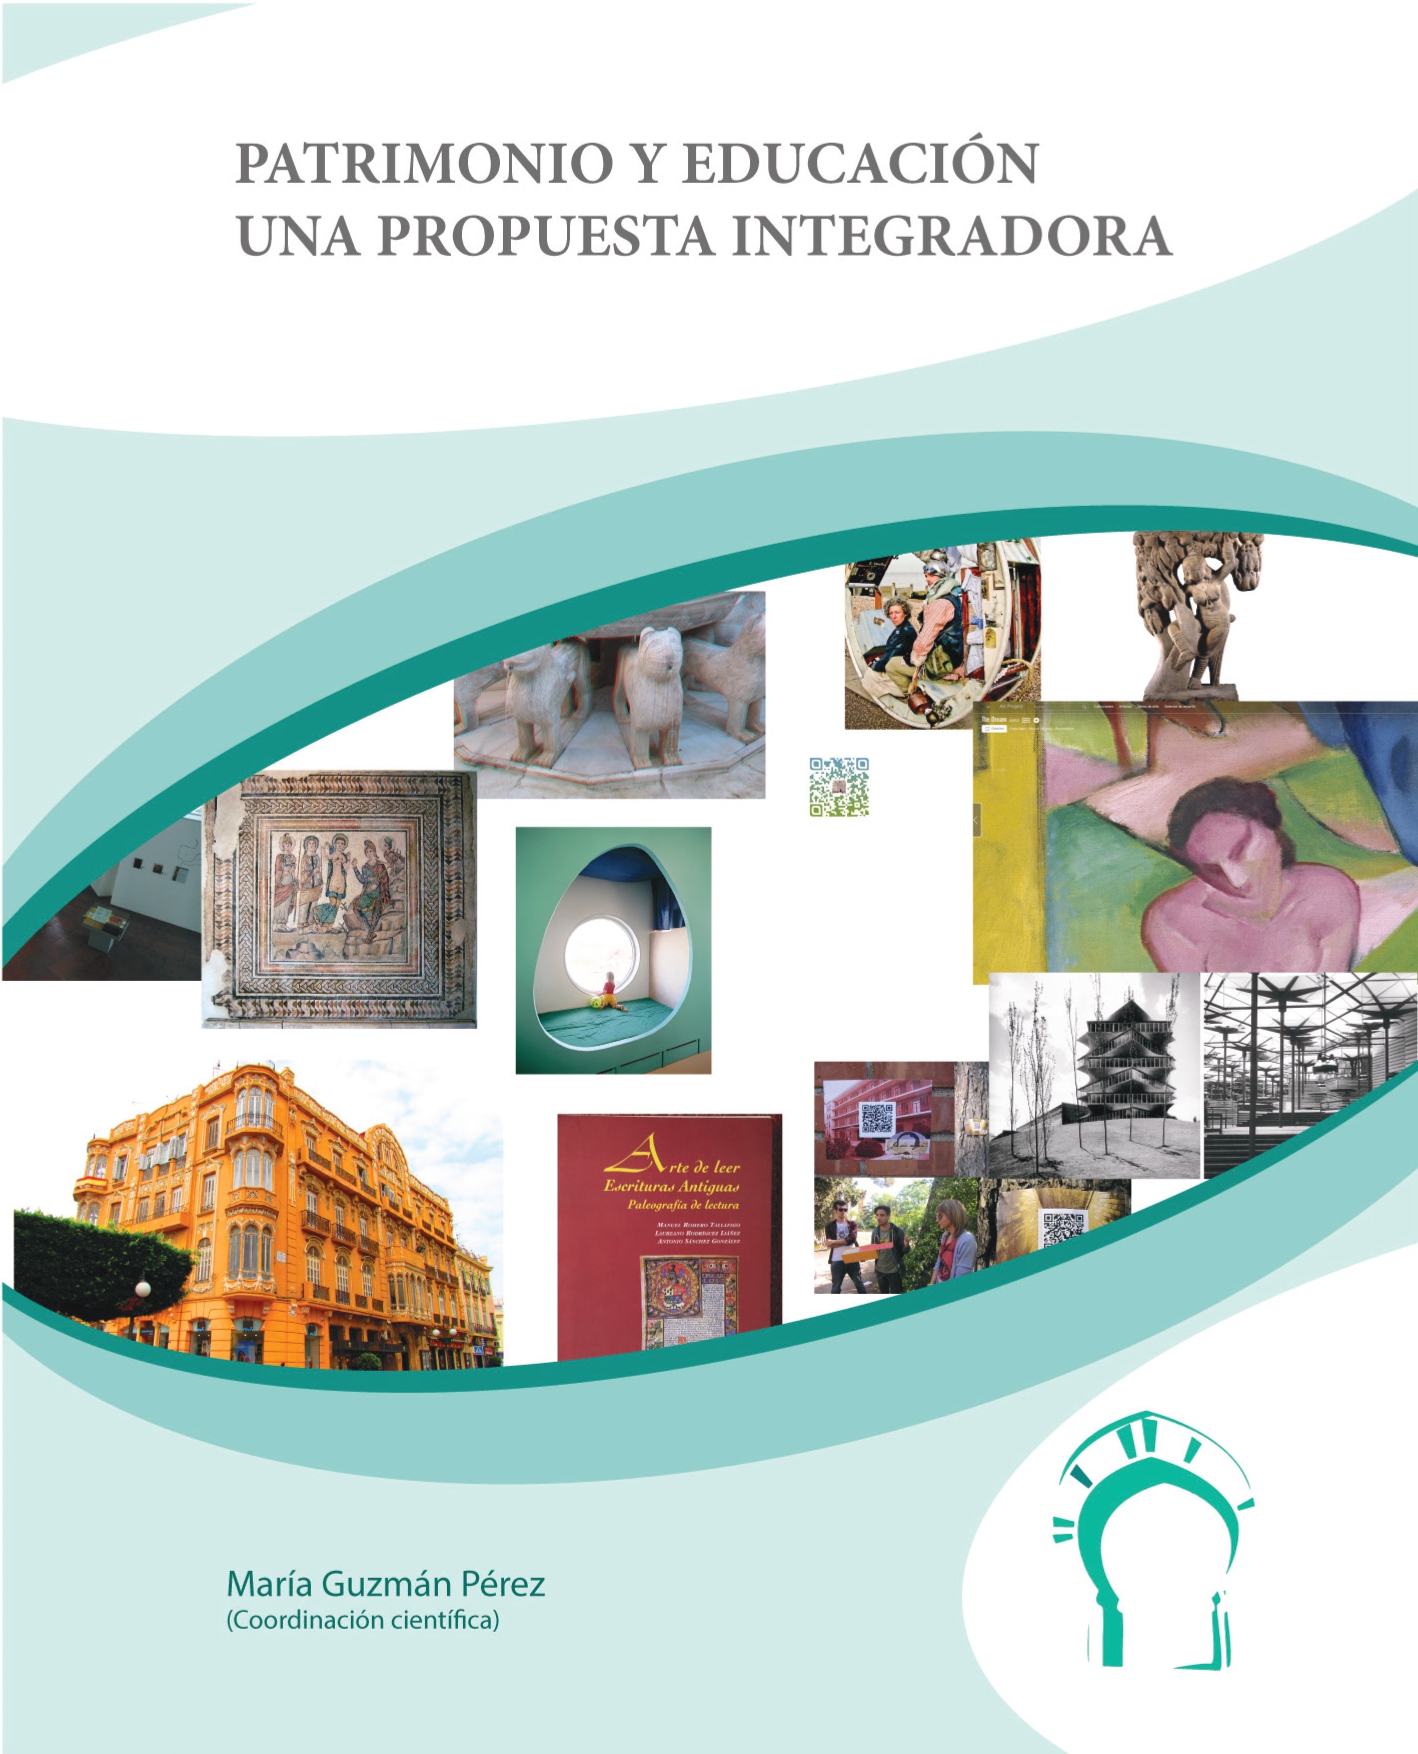 Imagen de portada del libro Patrimonio y educación. Una propuesta integradora